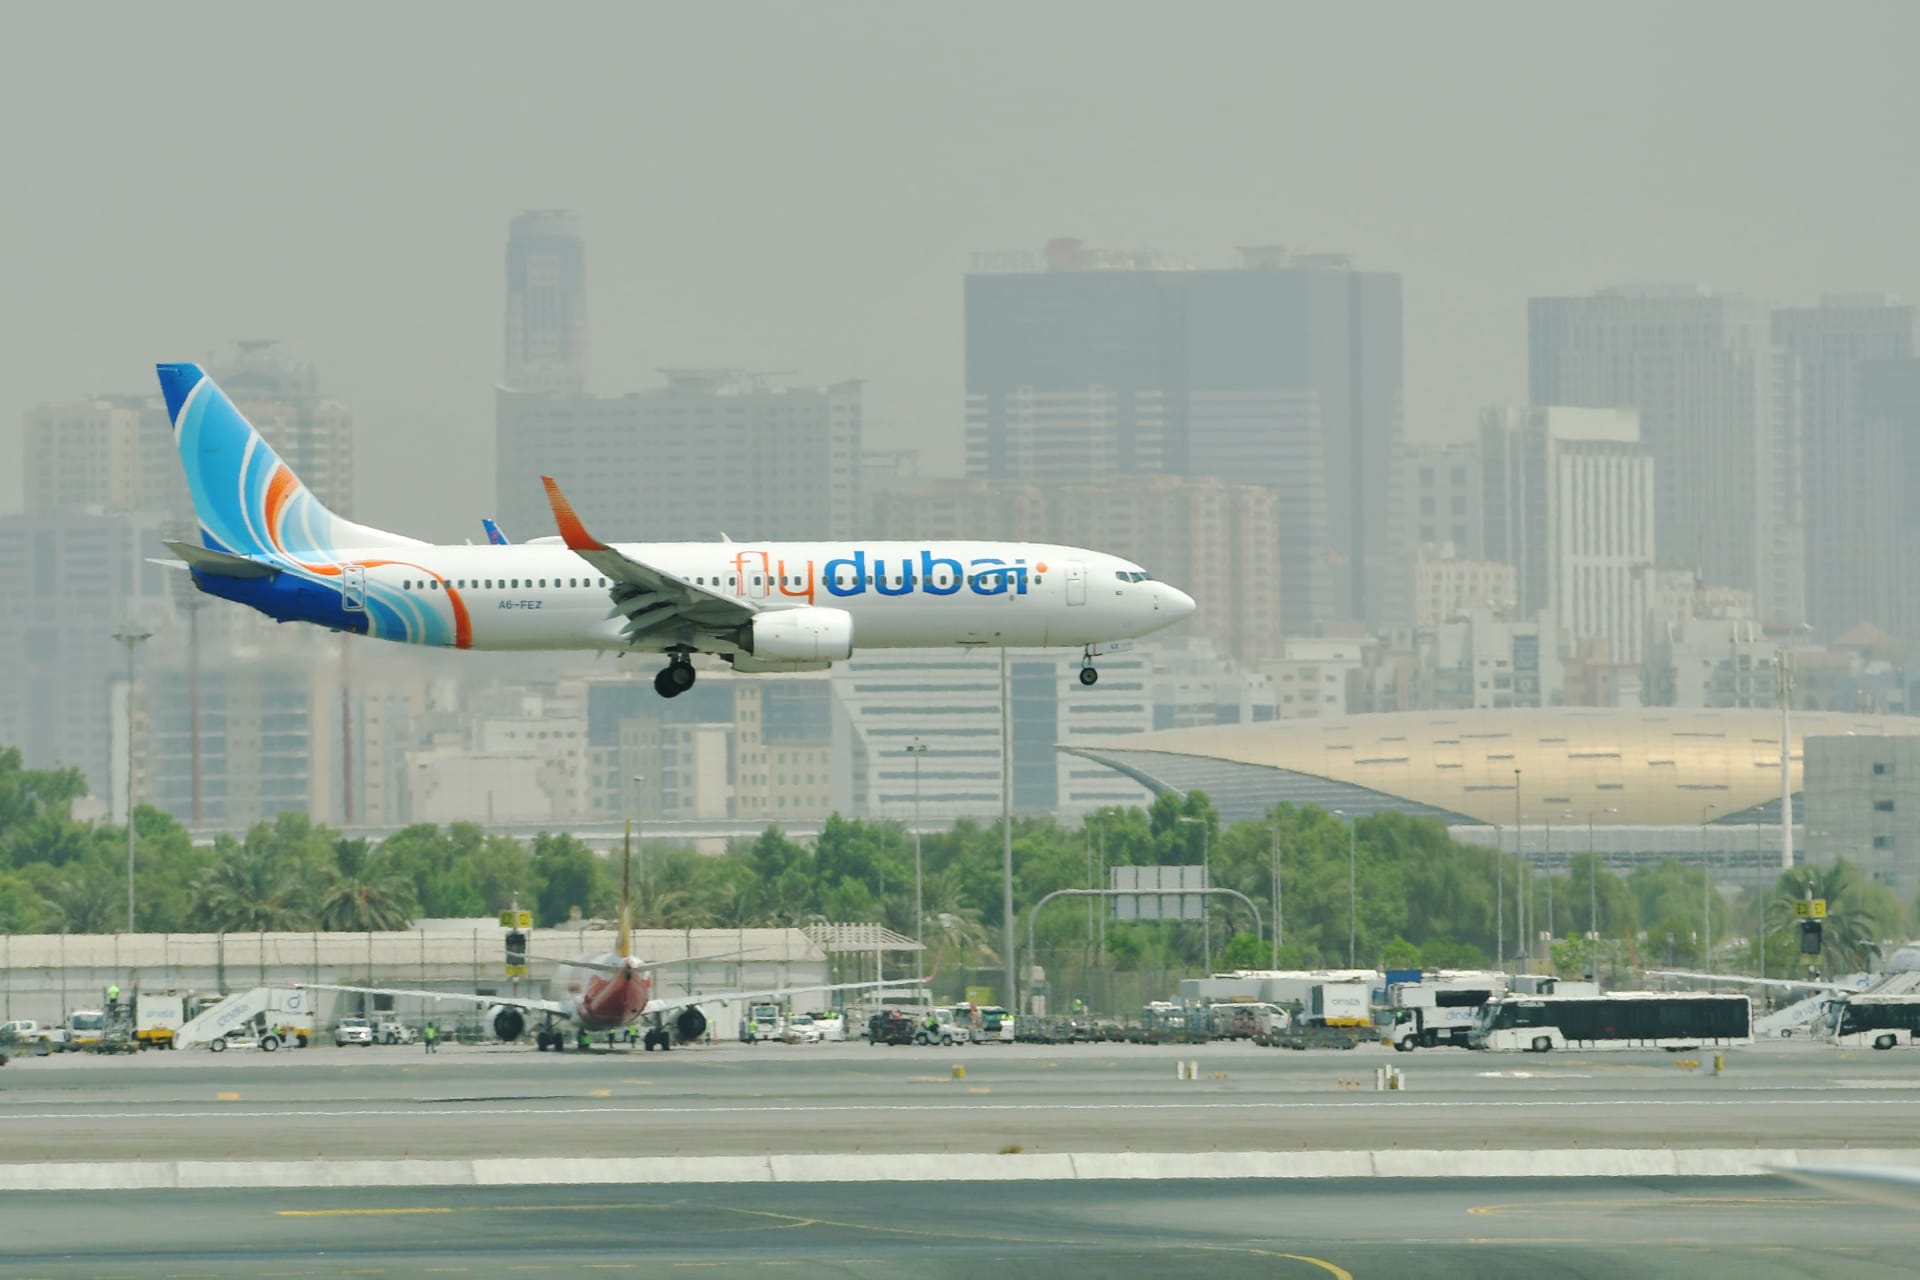 إيقاف حركة الطيران في مطار دبي بسبب "درون" وعودتها مرة أخرى